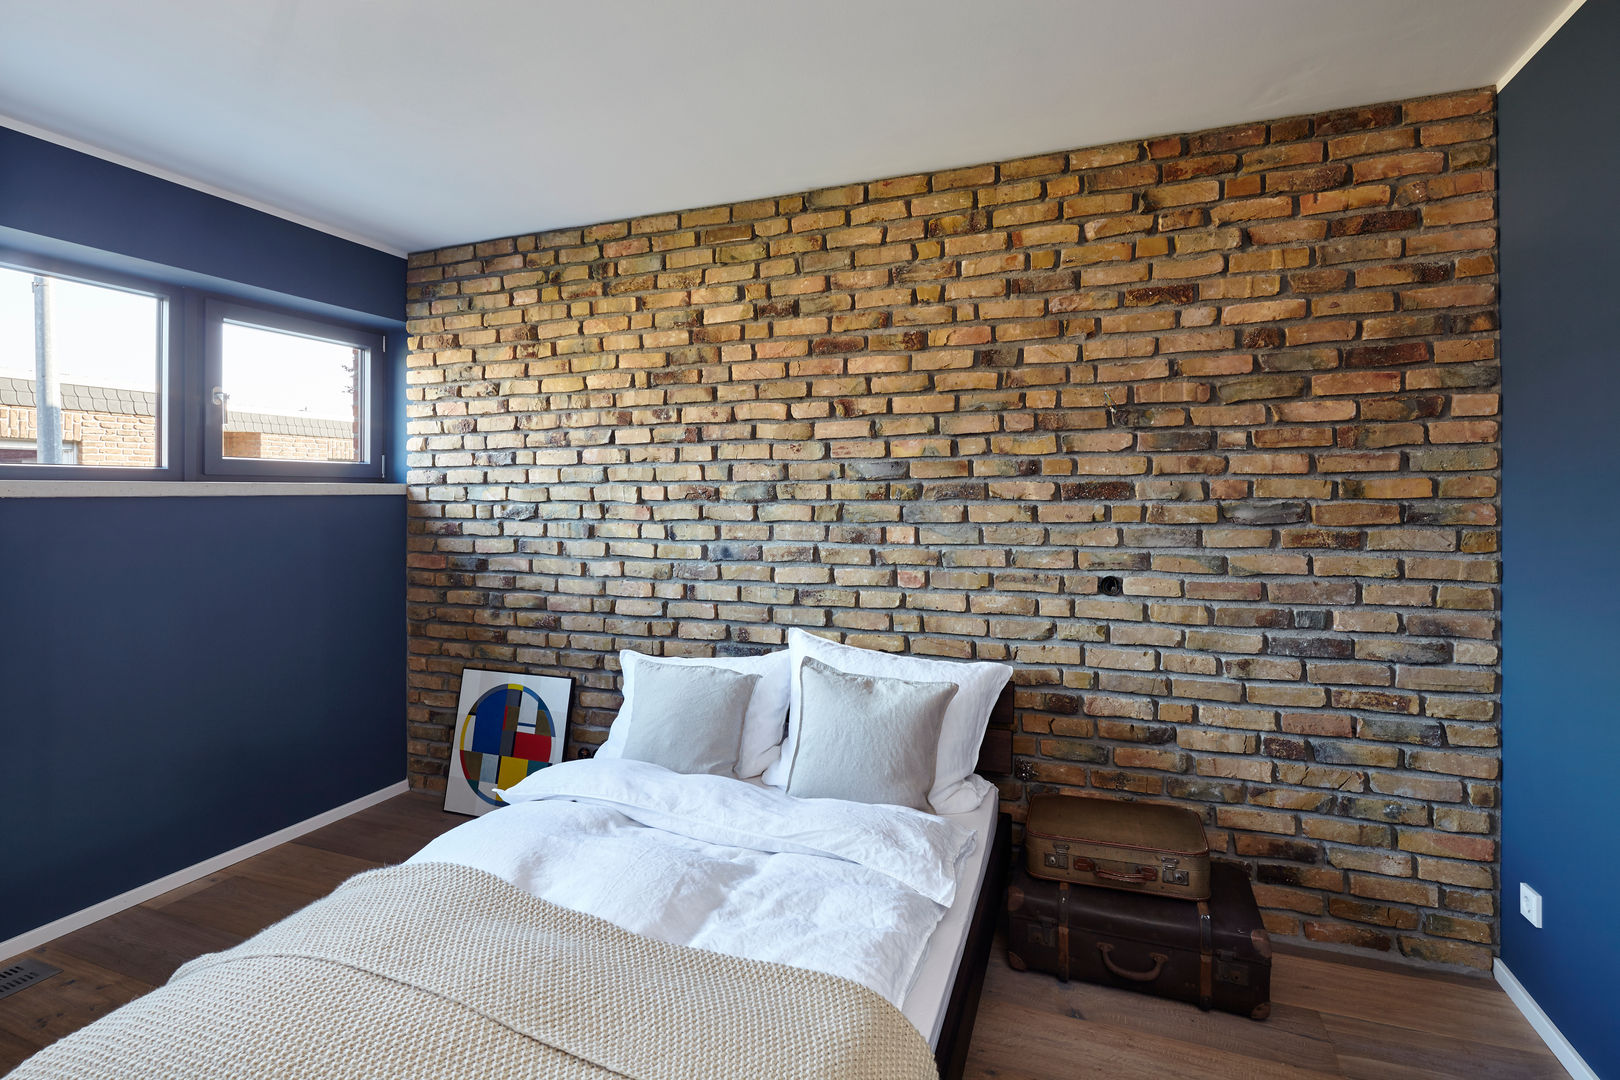 Haus I., Lioba Schneider Architekturfotografie Lioba Schneider Architekturfotografie Modern Bedroom Bricks